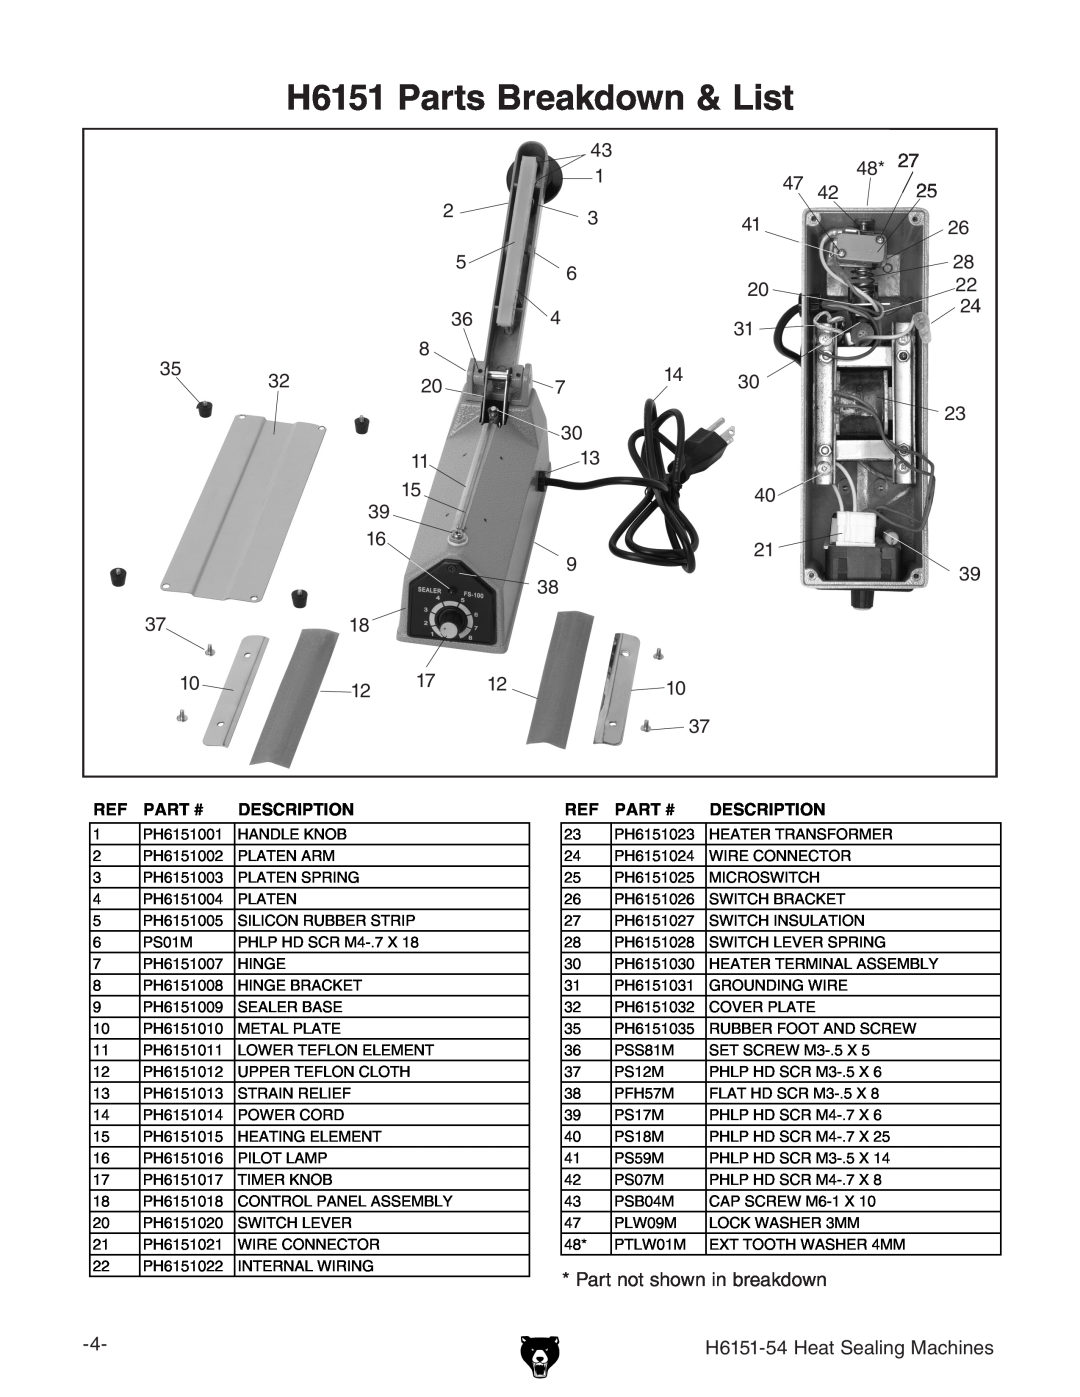 Grizzly H6151-54 specifications H6151 Parts Breakdown & List, Part #, Description 